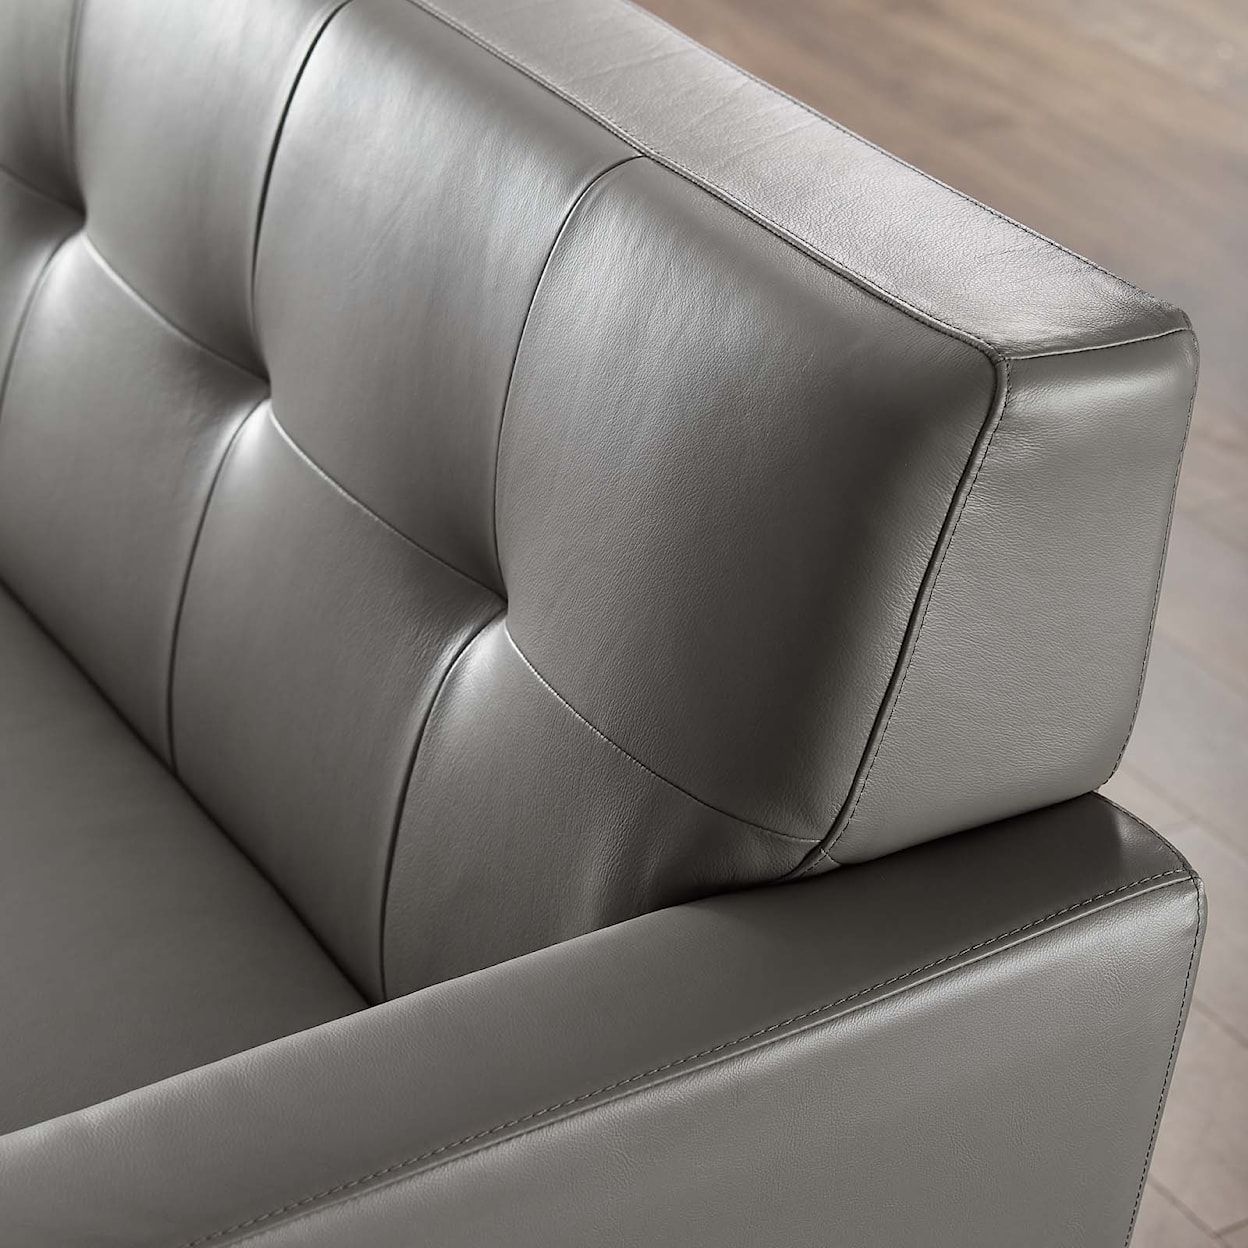 Modway Engage Lounge Sofa